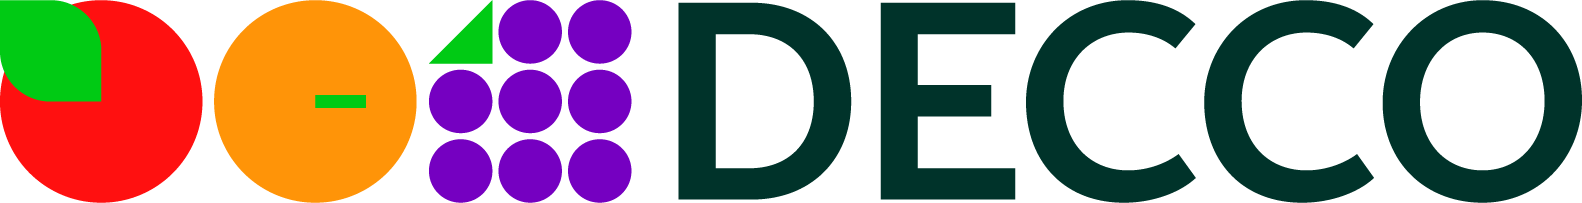 DECCO Italy Logo